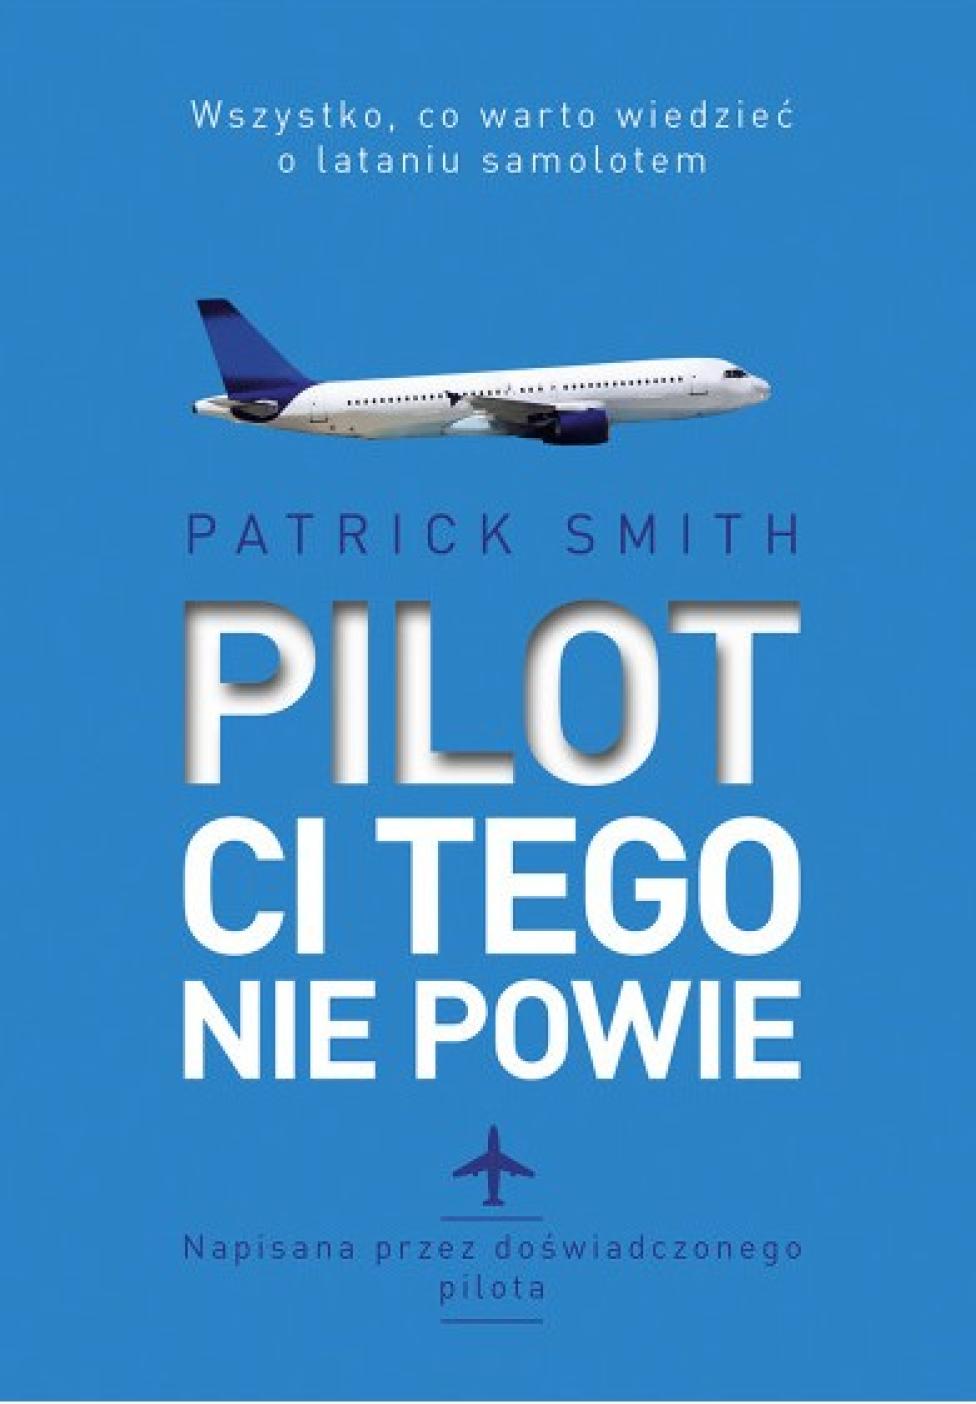 Książka "Pilot ci tego nie powie" (fot. Wydawnictwo MUZA)